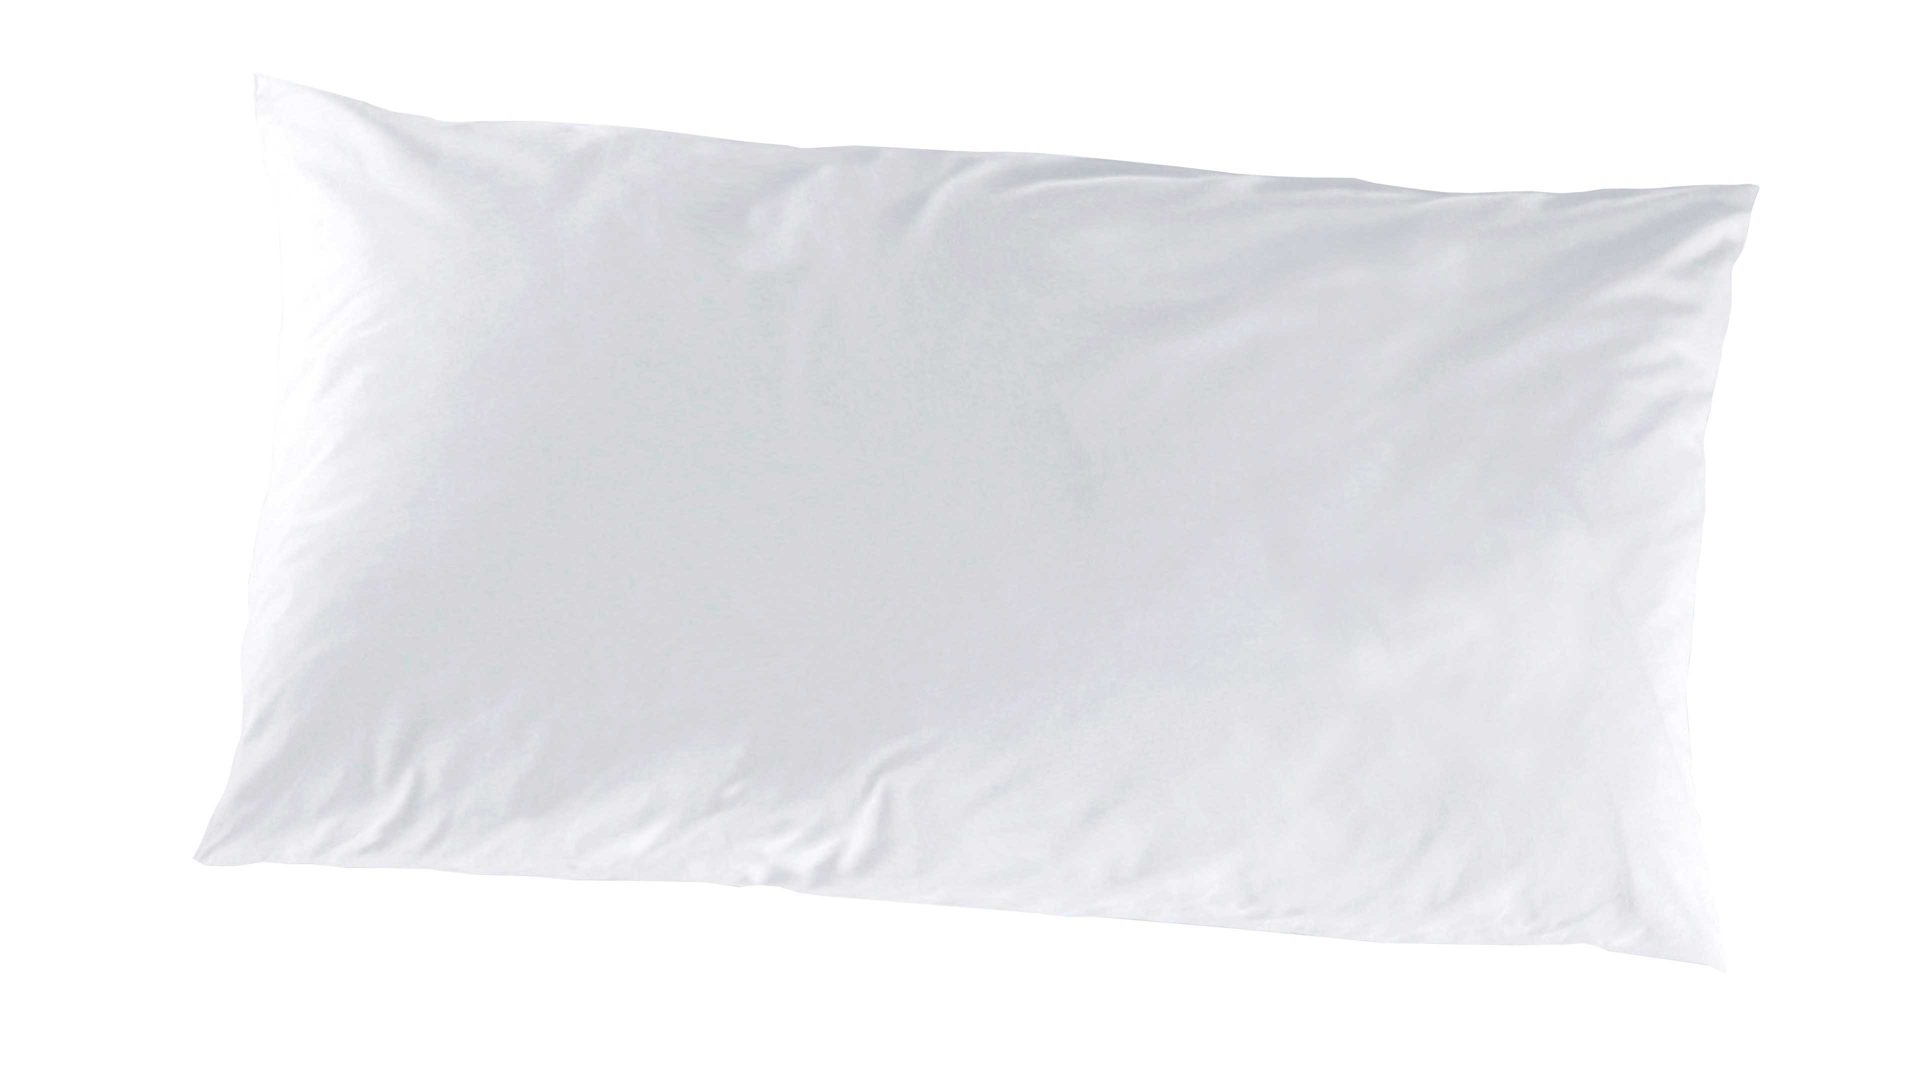 Kissenbezug /-hülle H.g. hahn haustextilien aus Stoff in Weiß HAHN Luxus-Satin-Kopfkissenbezug Sempre weißer Baumwollsatin - ca. 40 x 80 cm